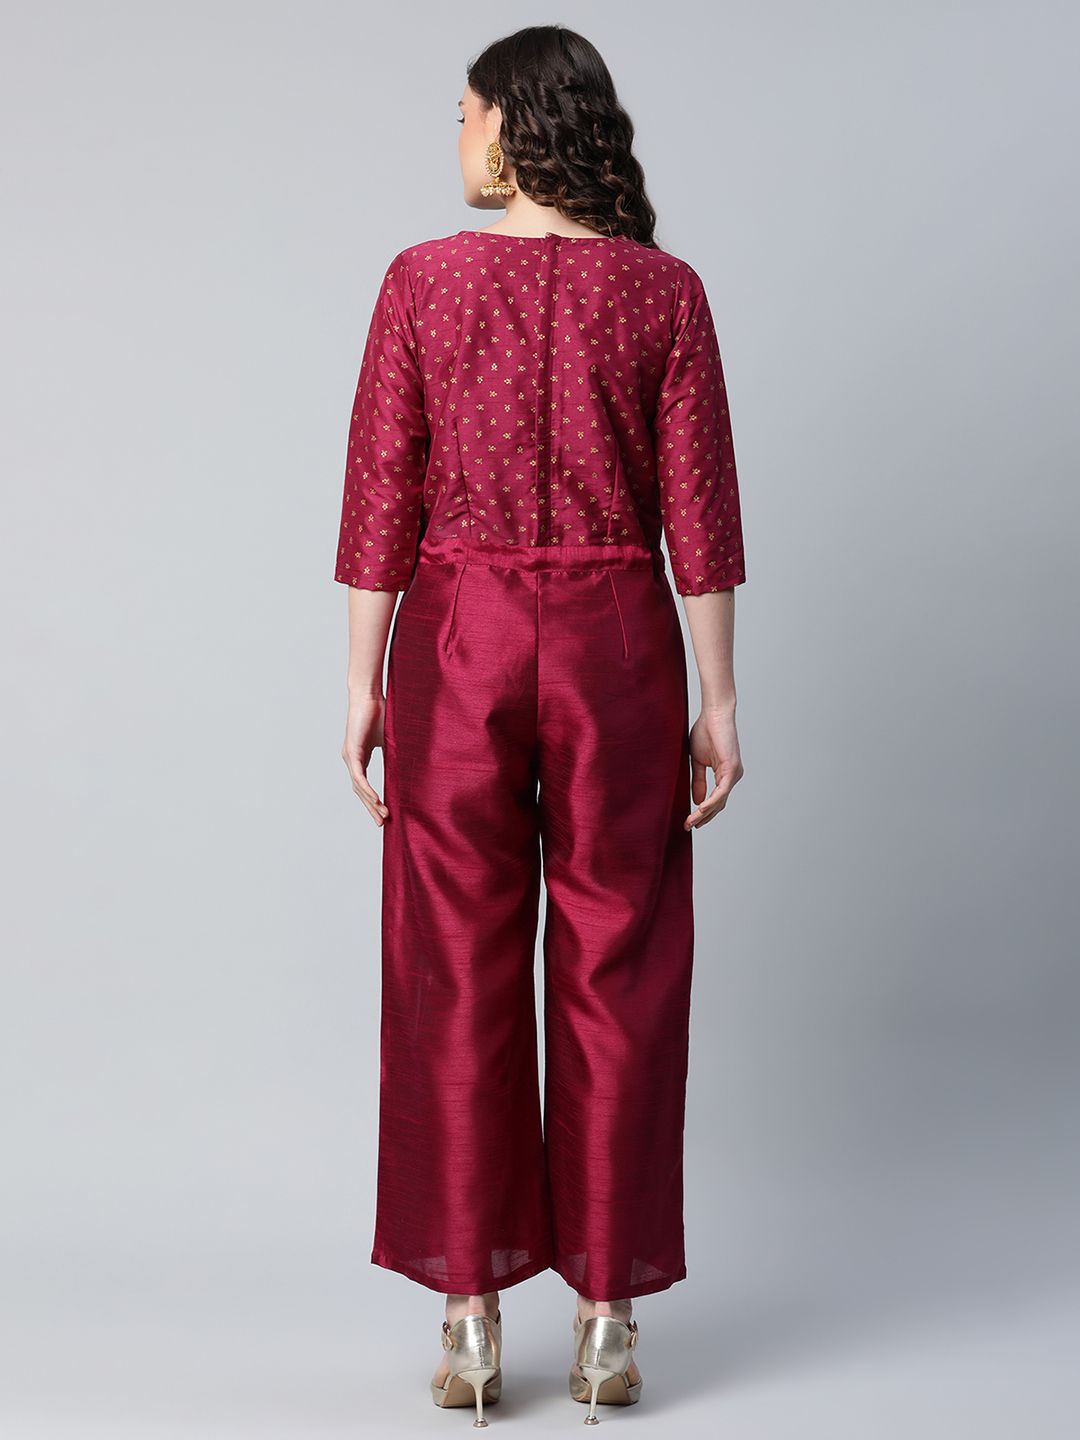 Ahalyaa Womens Burgundy crepe Printed Jumpsuit